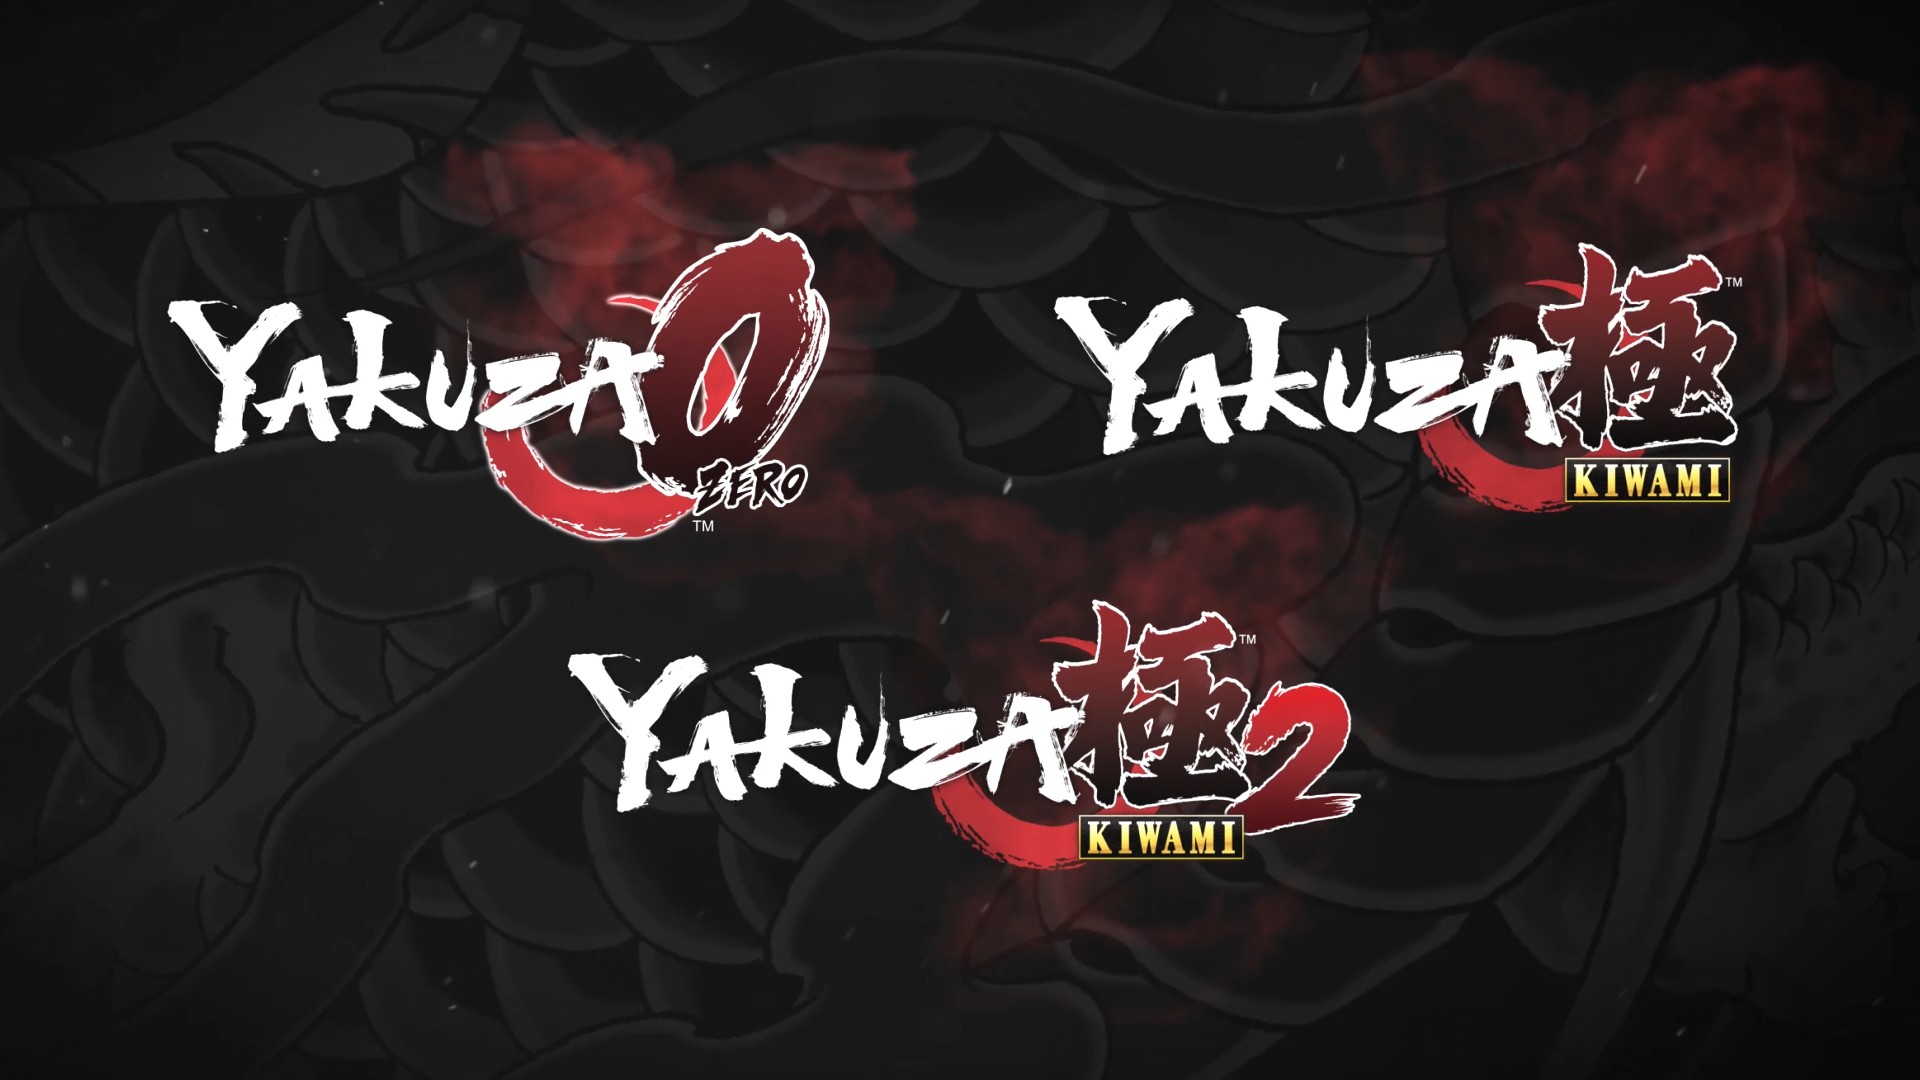 yakuza kiwami 2 xbox release date